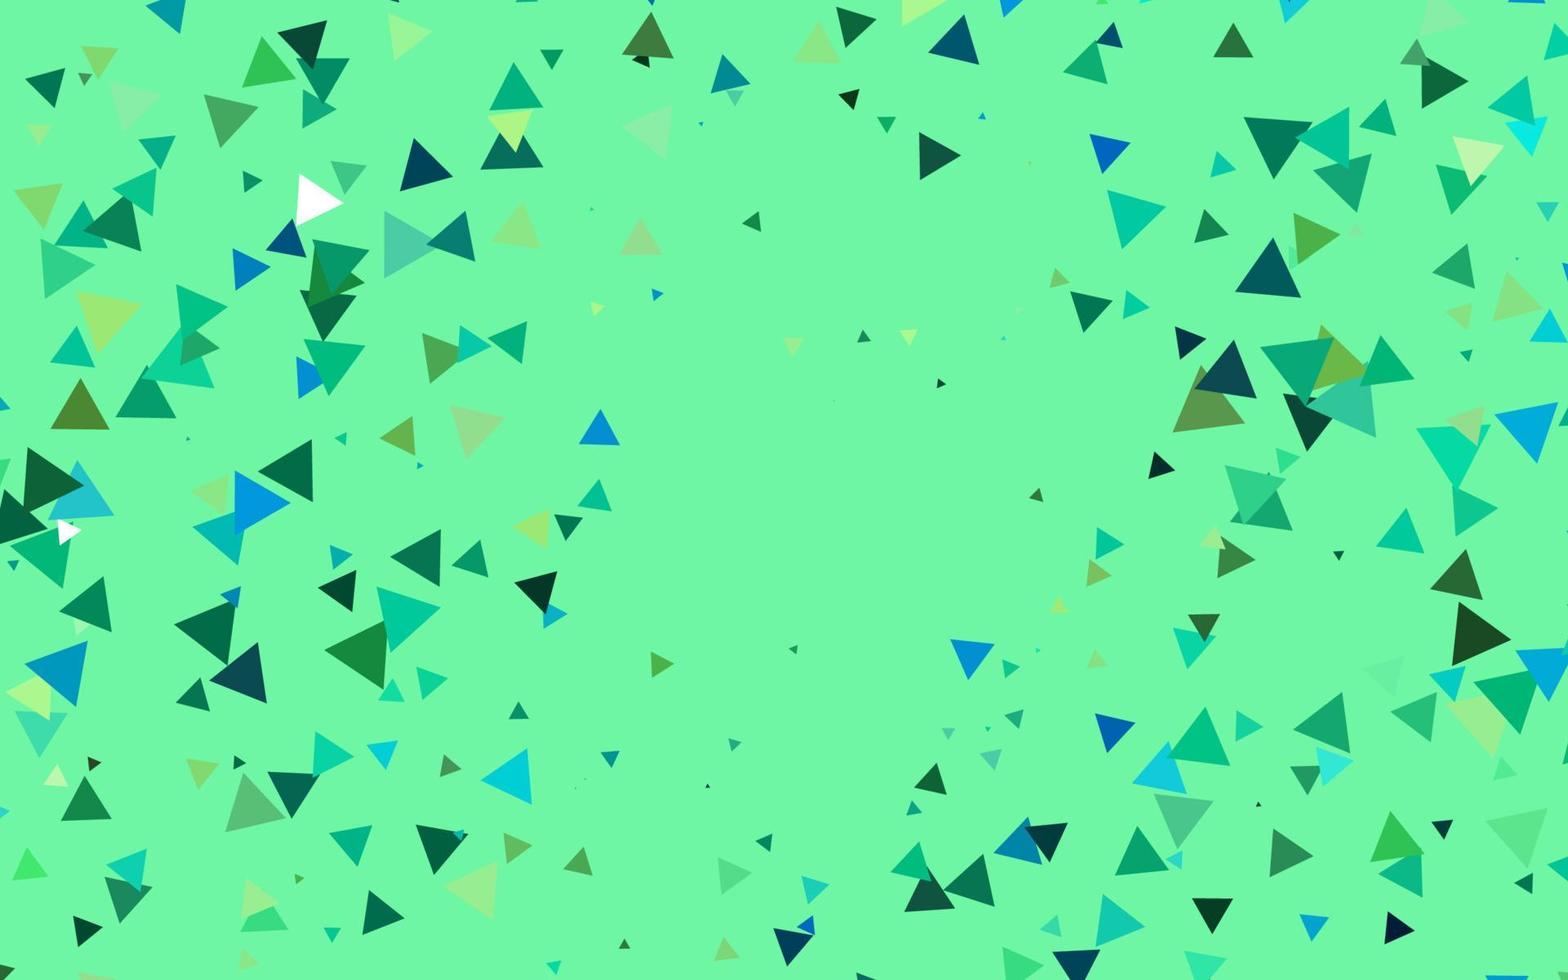 toile de fond de vecteur vert clair et jaune avec des lignes, des triangles.